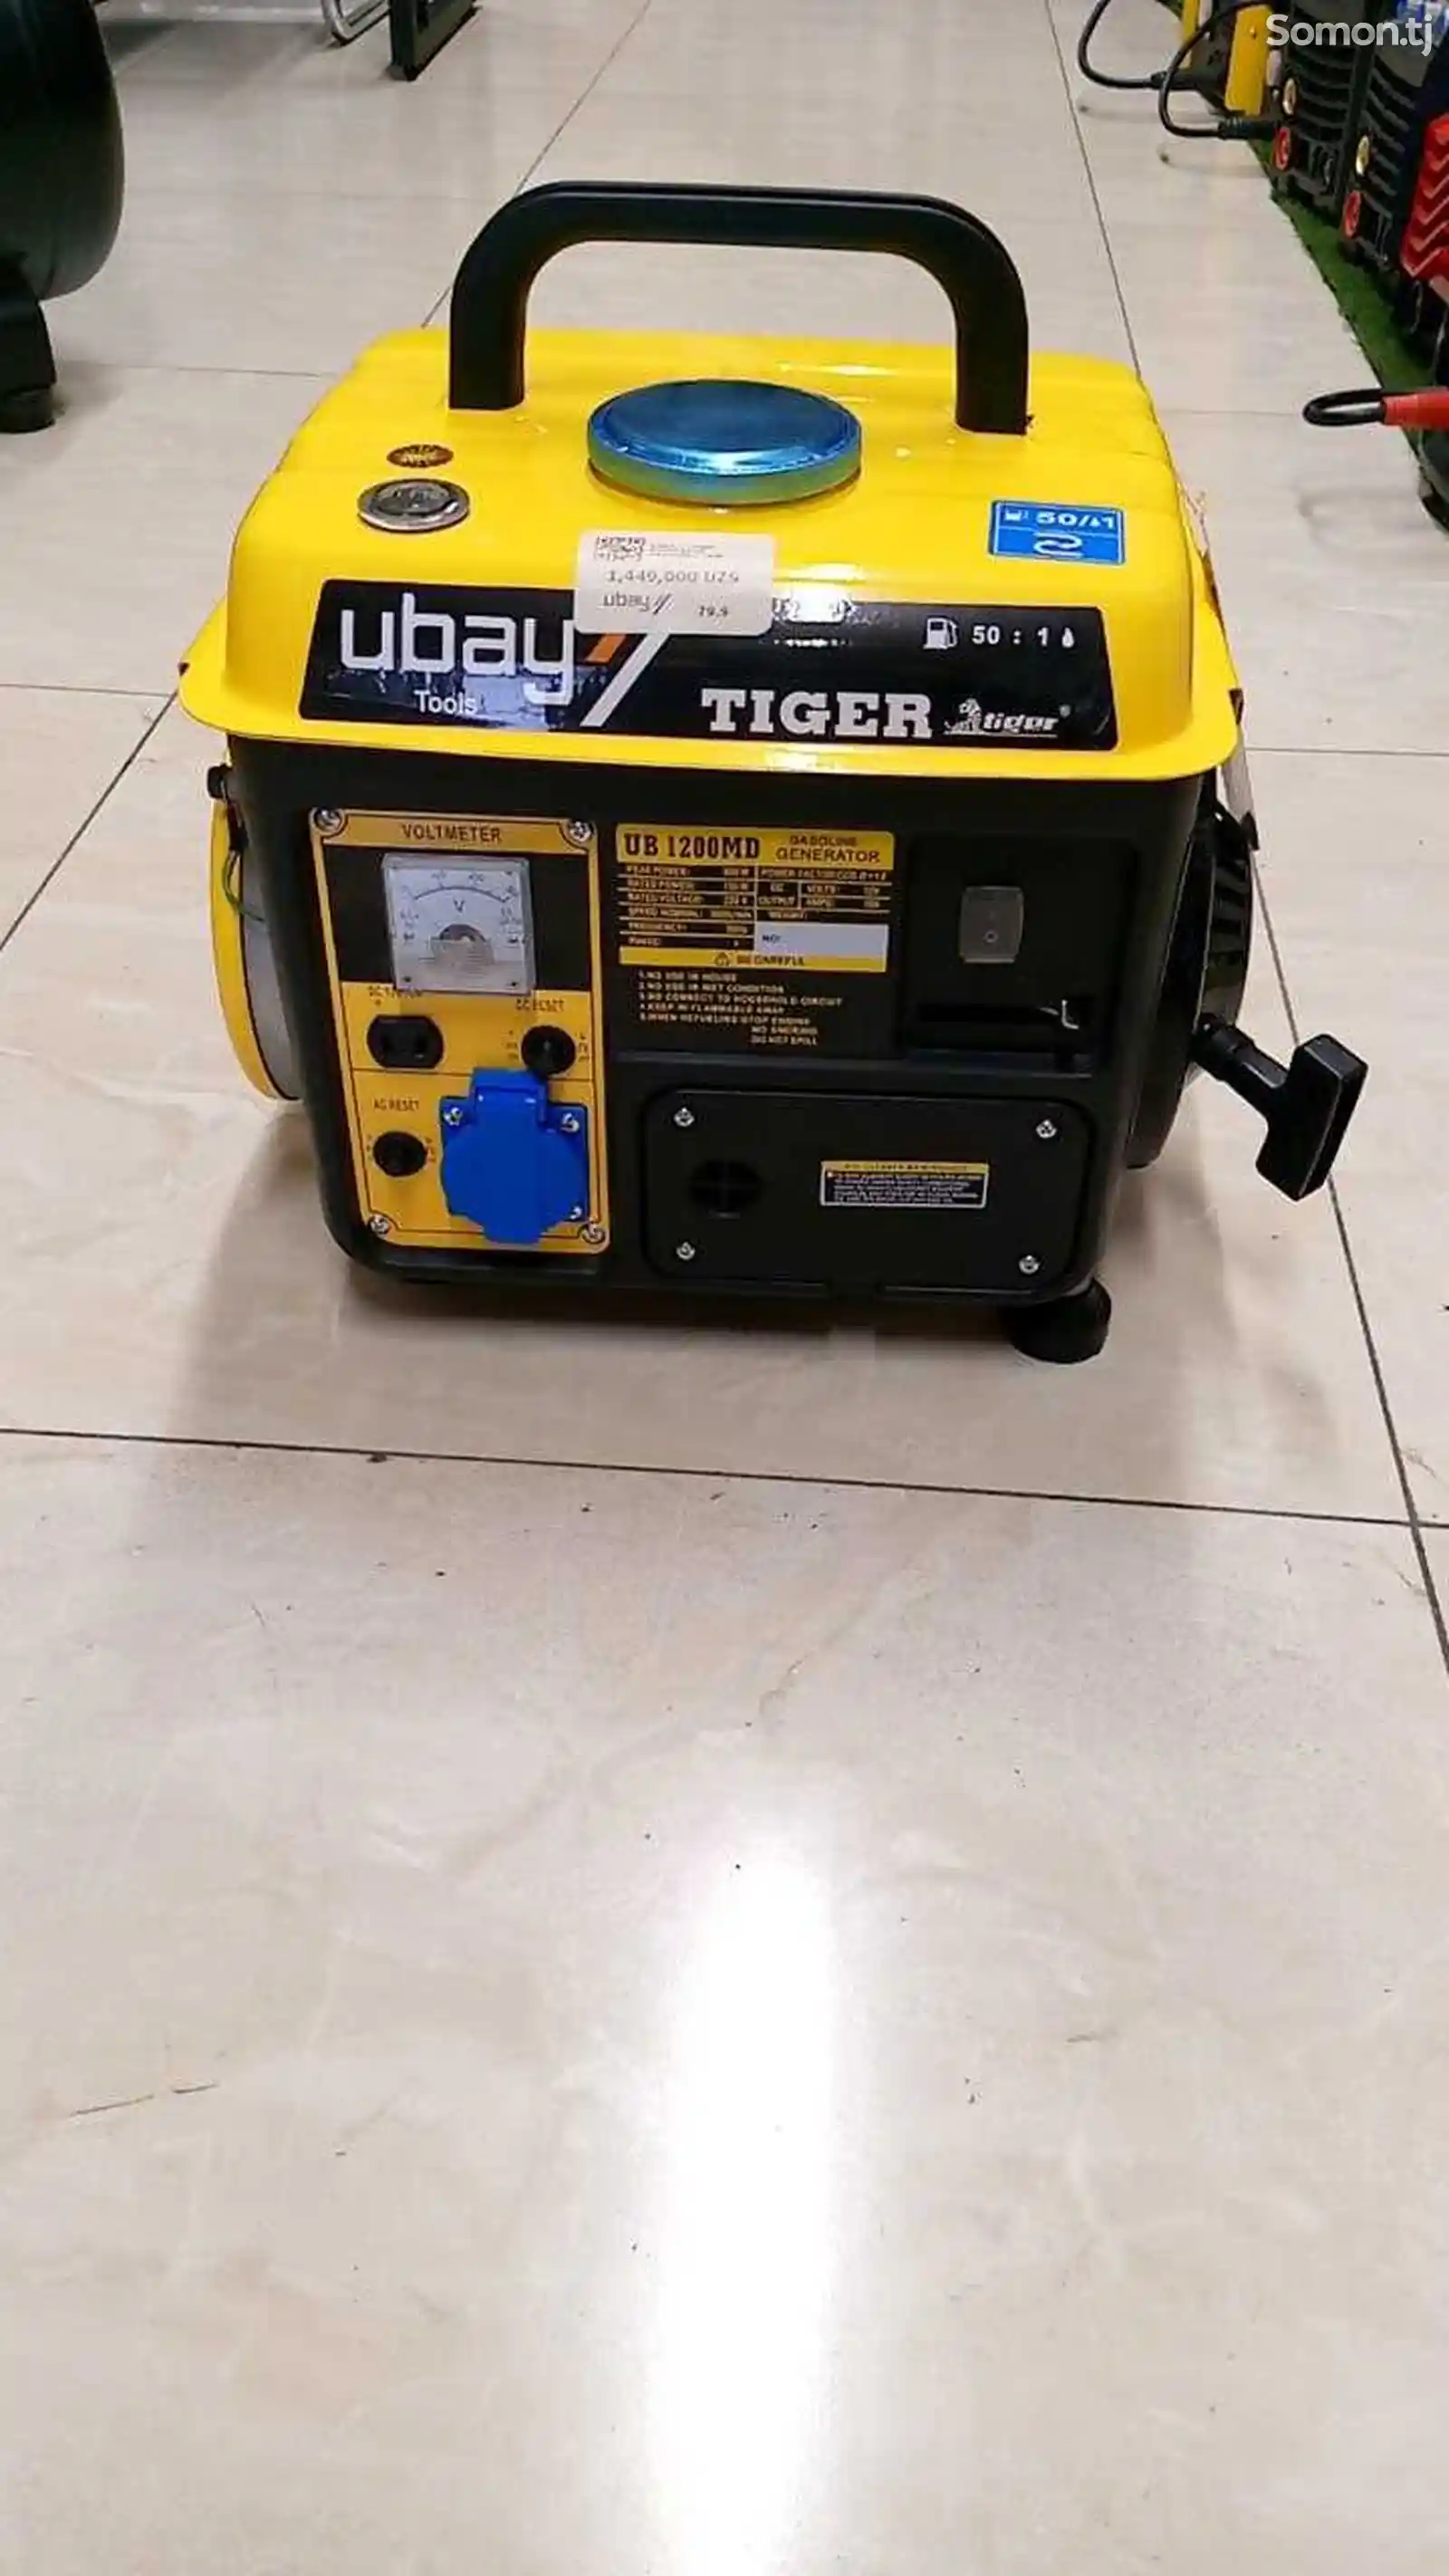 Генератор Ubay Tiger движок Generator UB-1200MD-1